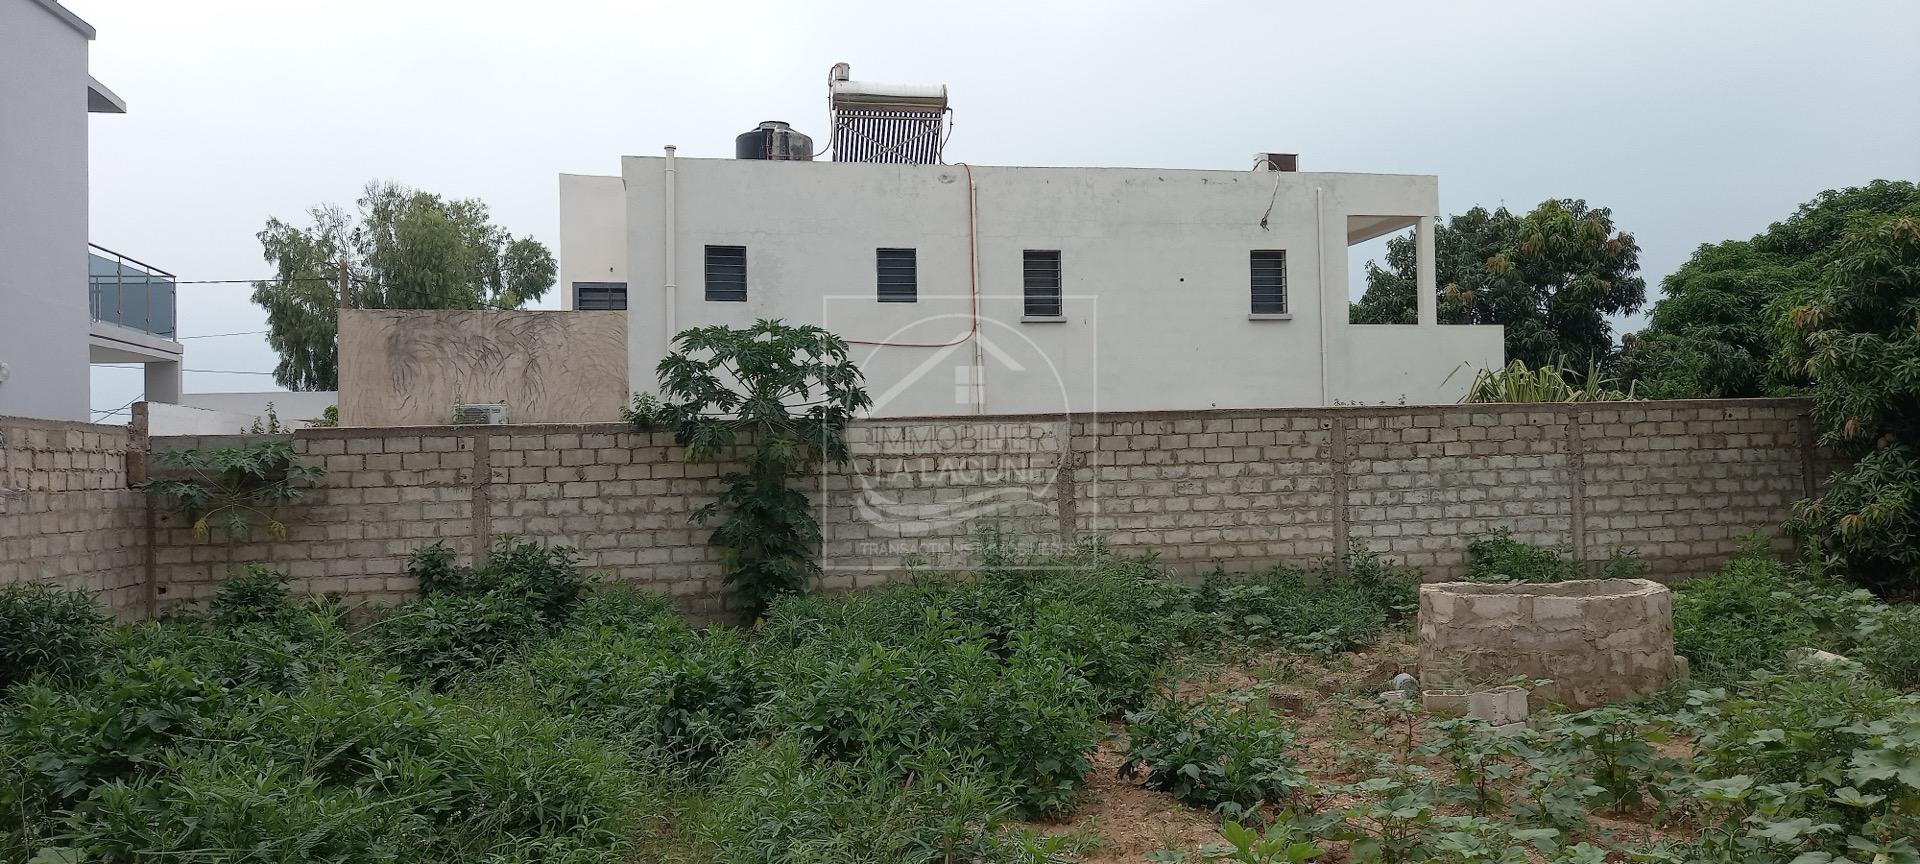 Agence Immobilière Saly Sénégal - T2810 - Terrain à NGAPAROU - T2810-terrain-a-vendre-a-ngaparou-senegal